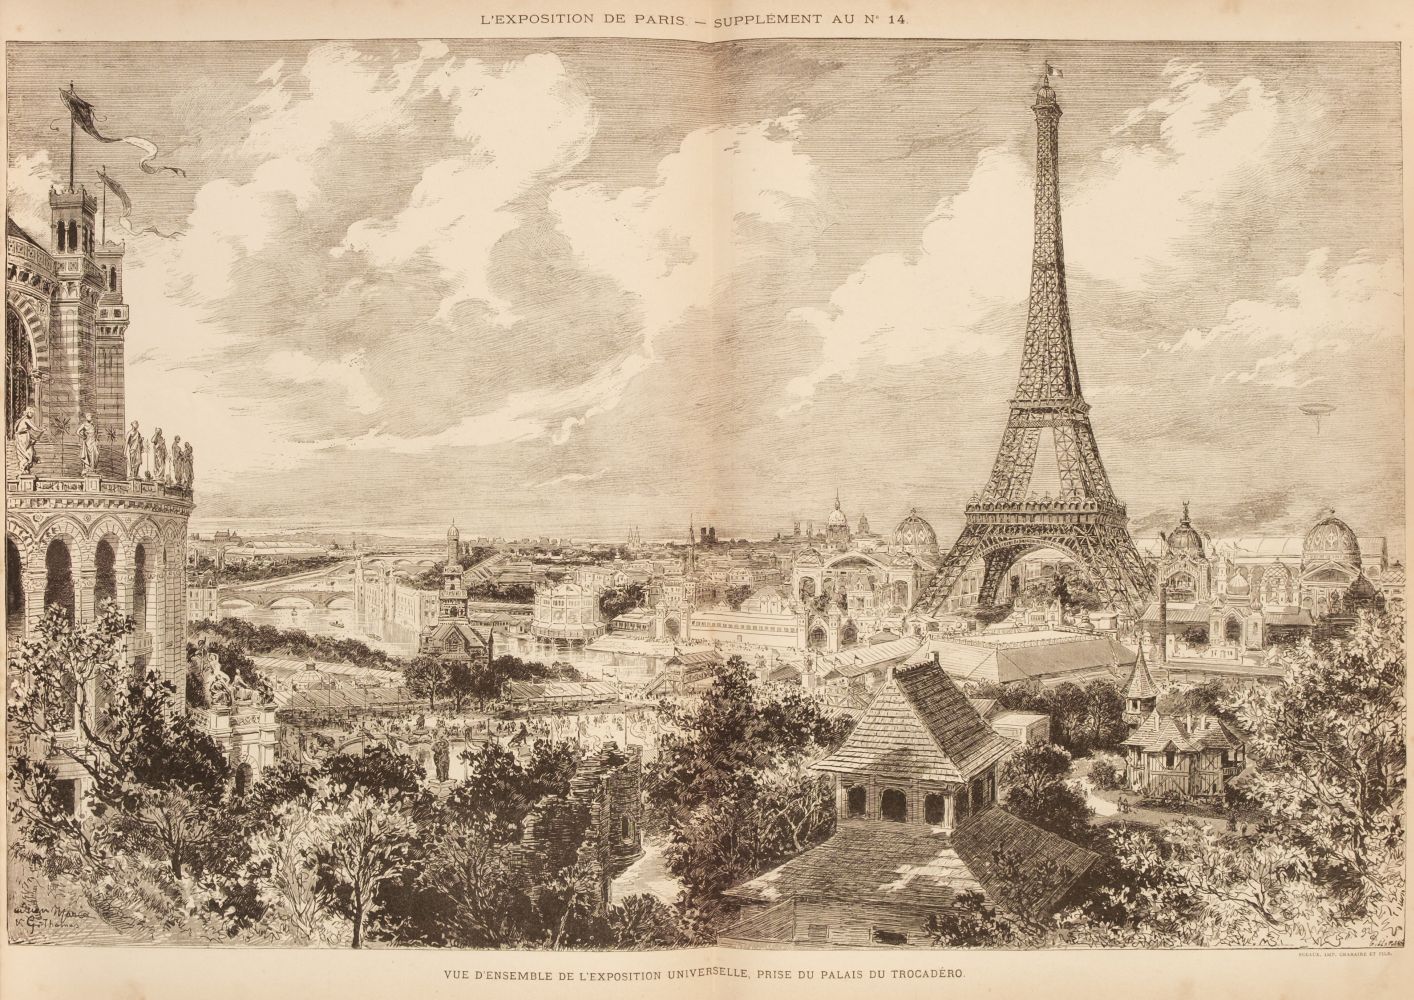 Paris. L'Exposition de Paris (1889), 1st and 2nd volumes, Paris: A La Librairie Ilustree, 1889